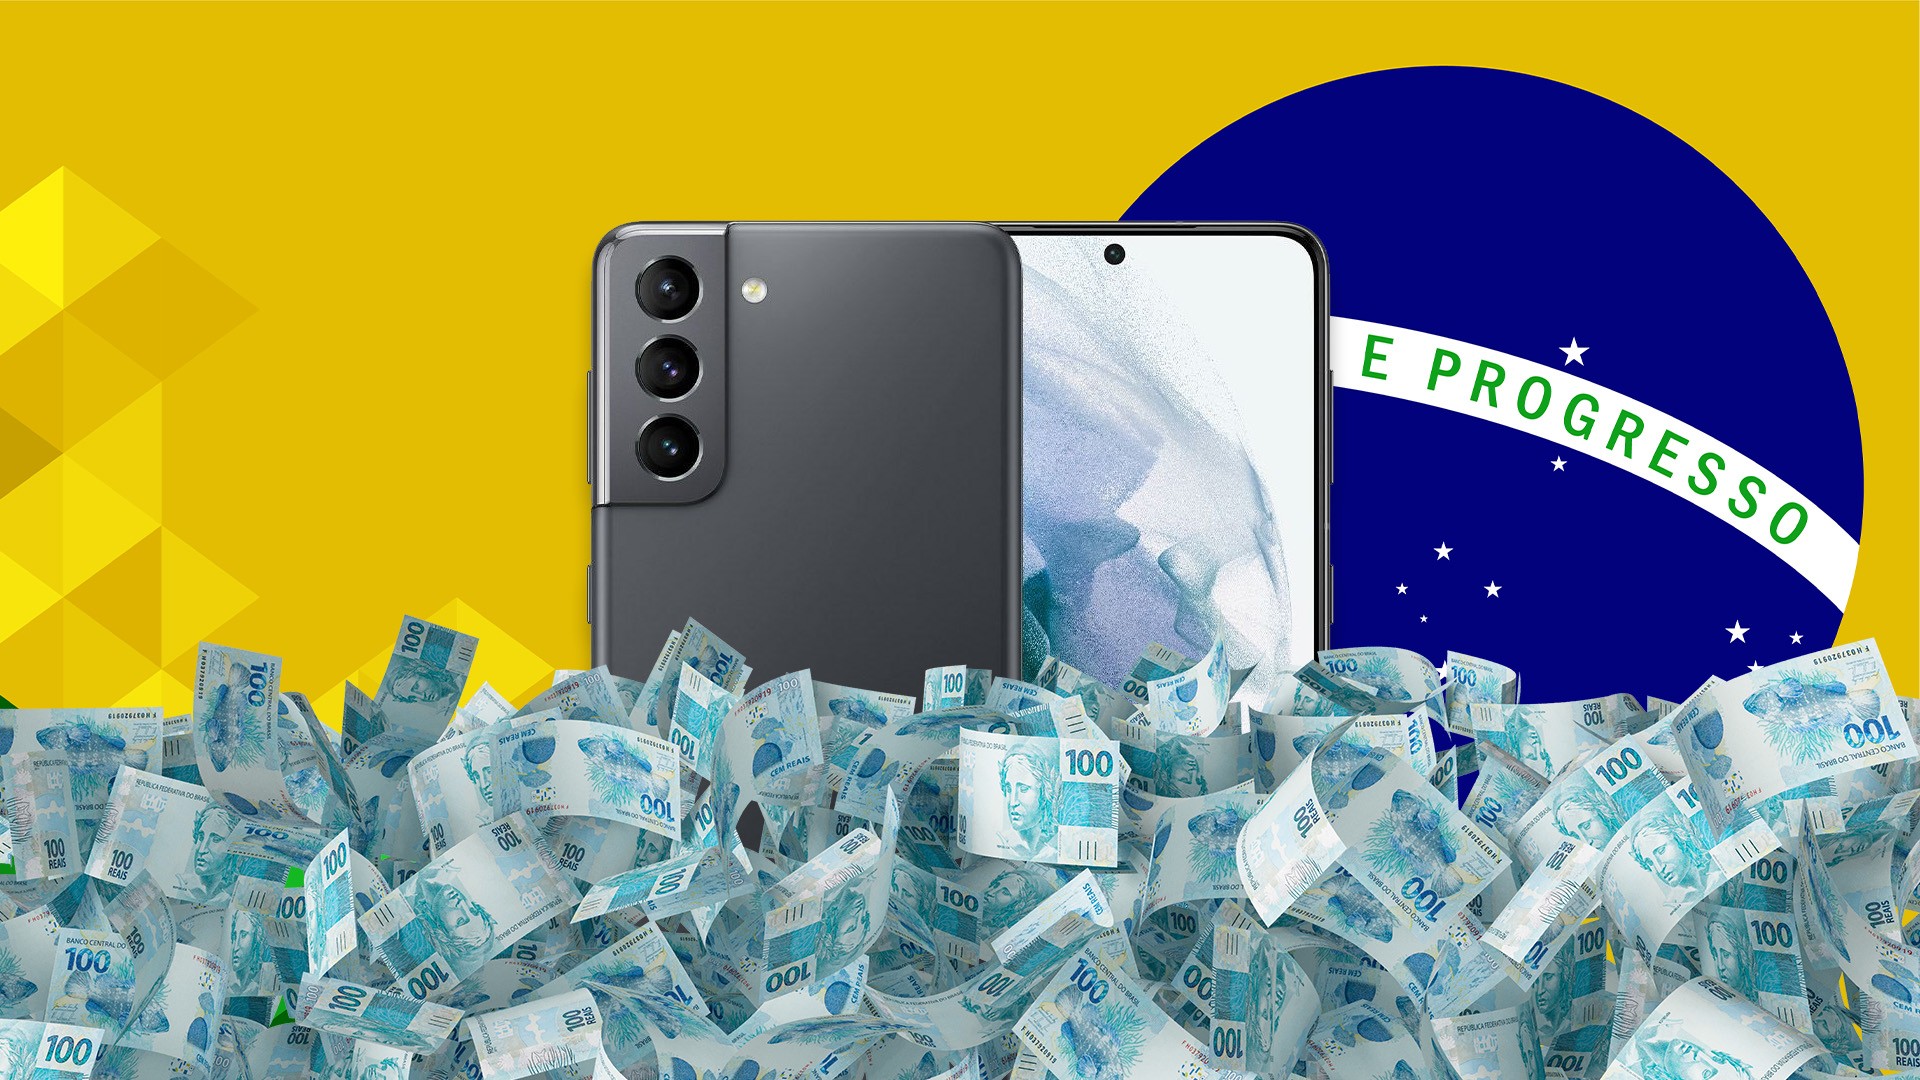 Samsung lança Galaxy S21 no Brasil; preços partem de R$ 5.999 - ISTOÉ  DINHEIRO